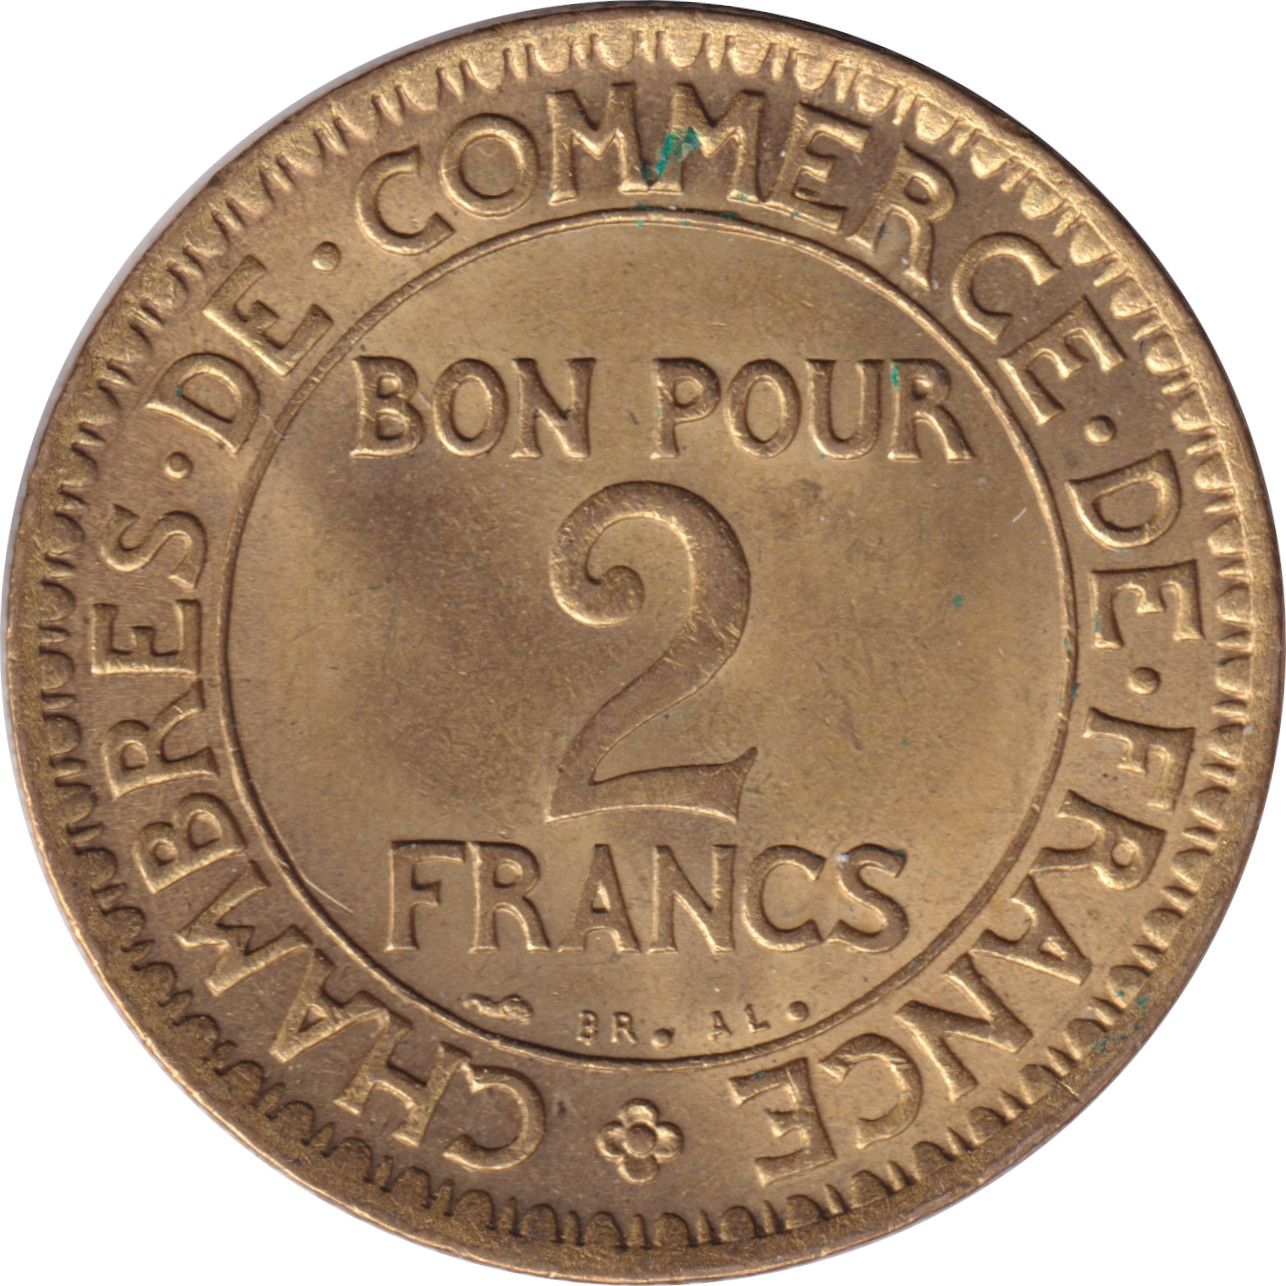 2 francs - Domard